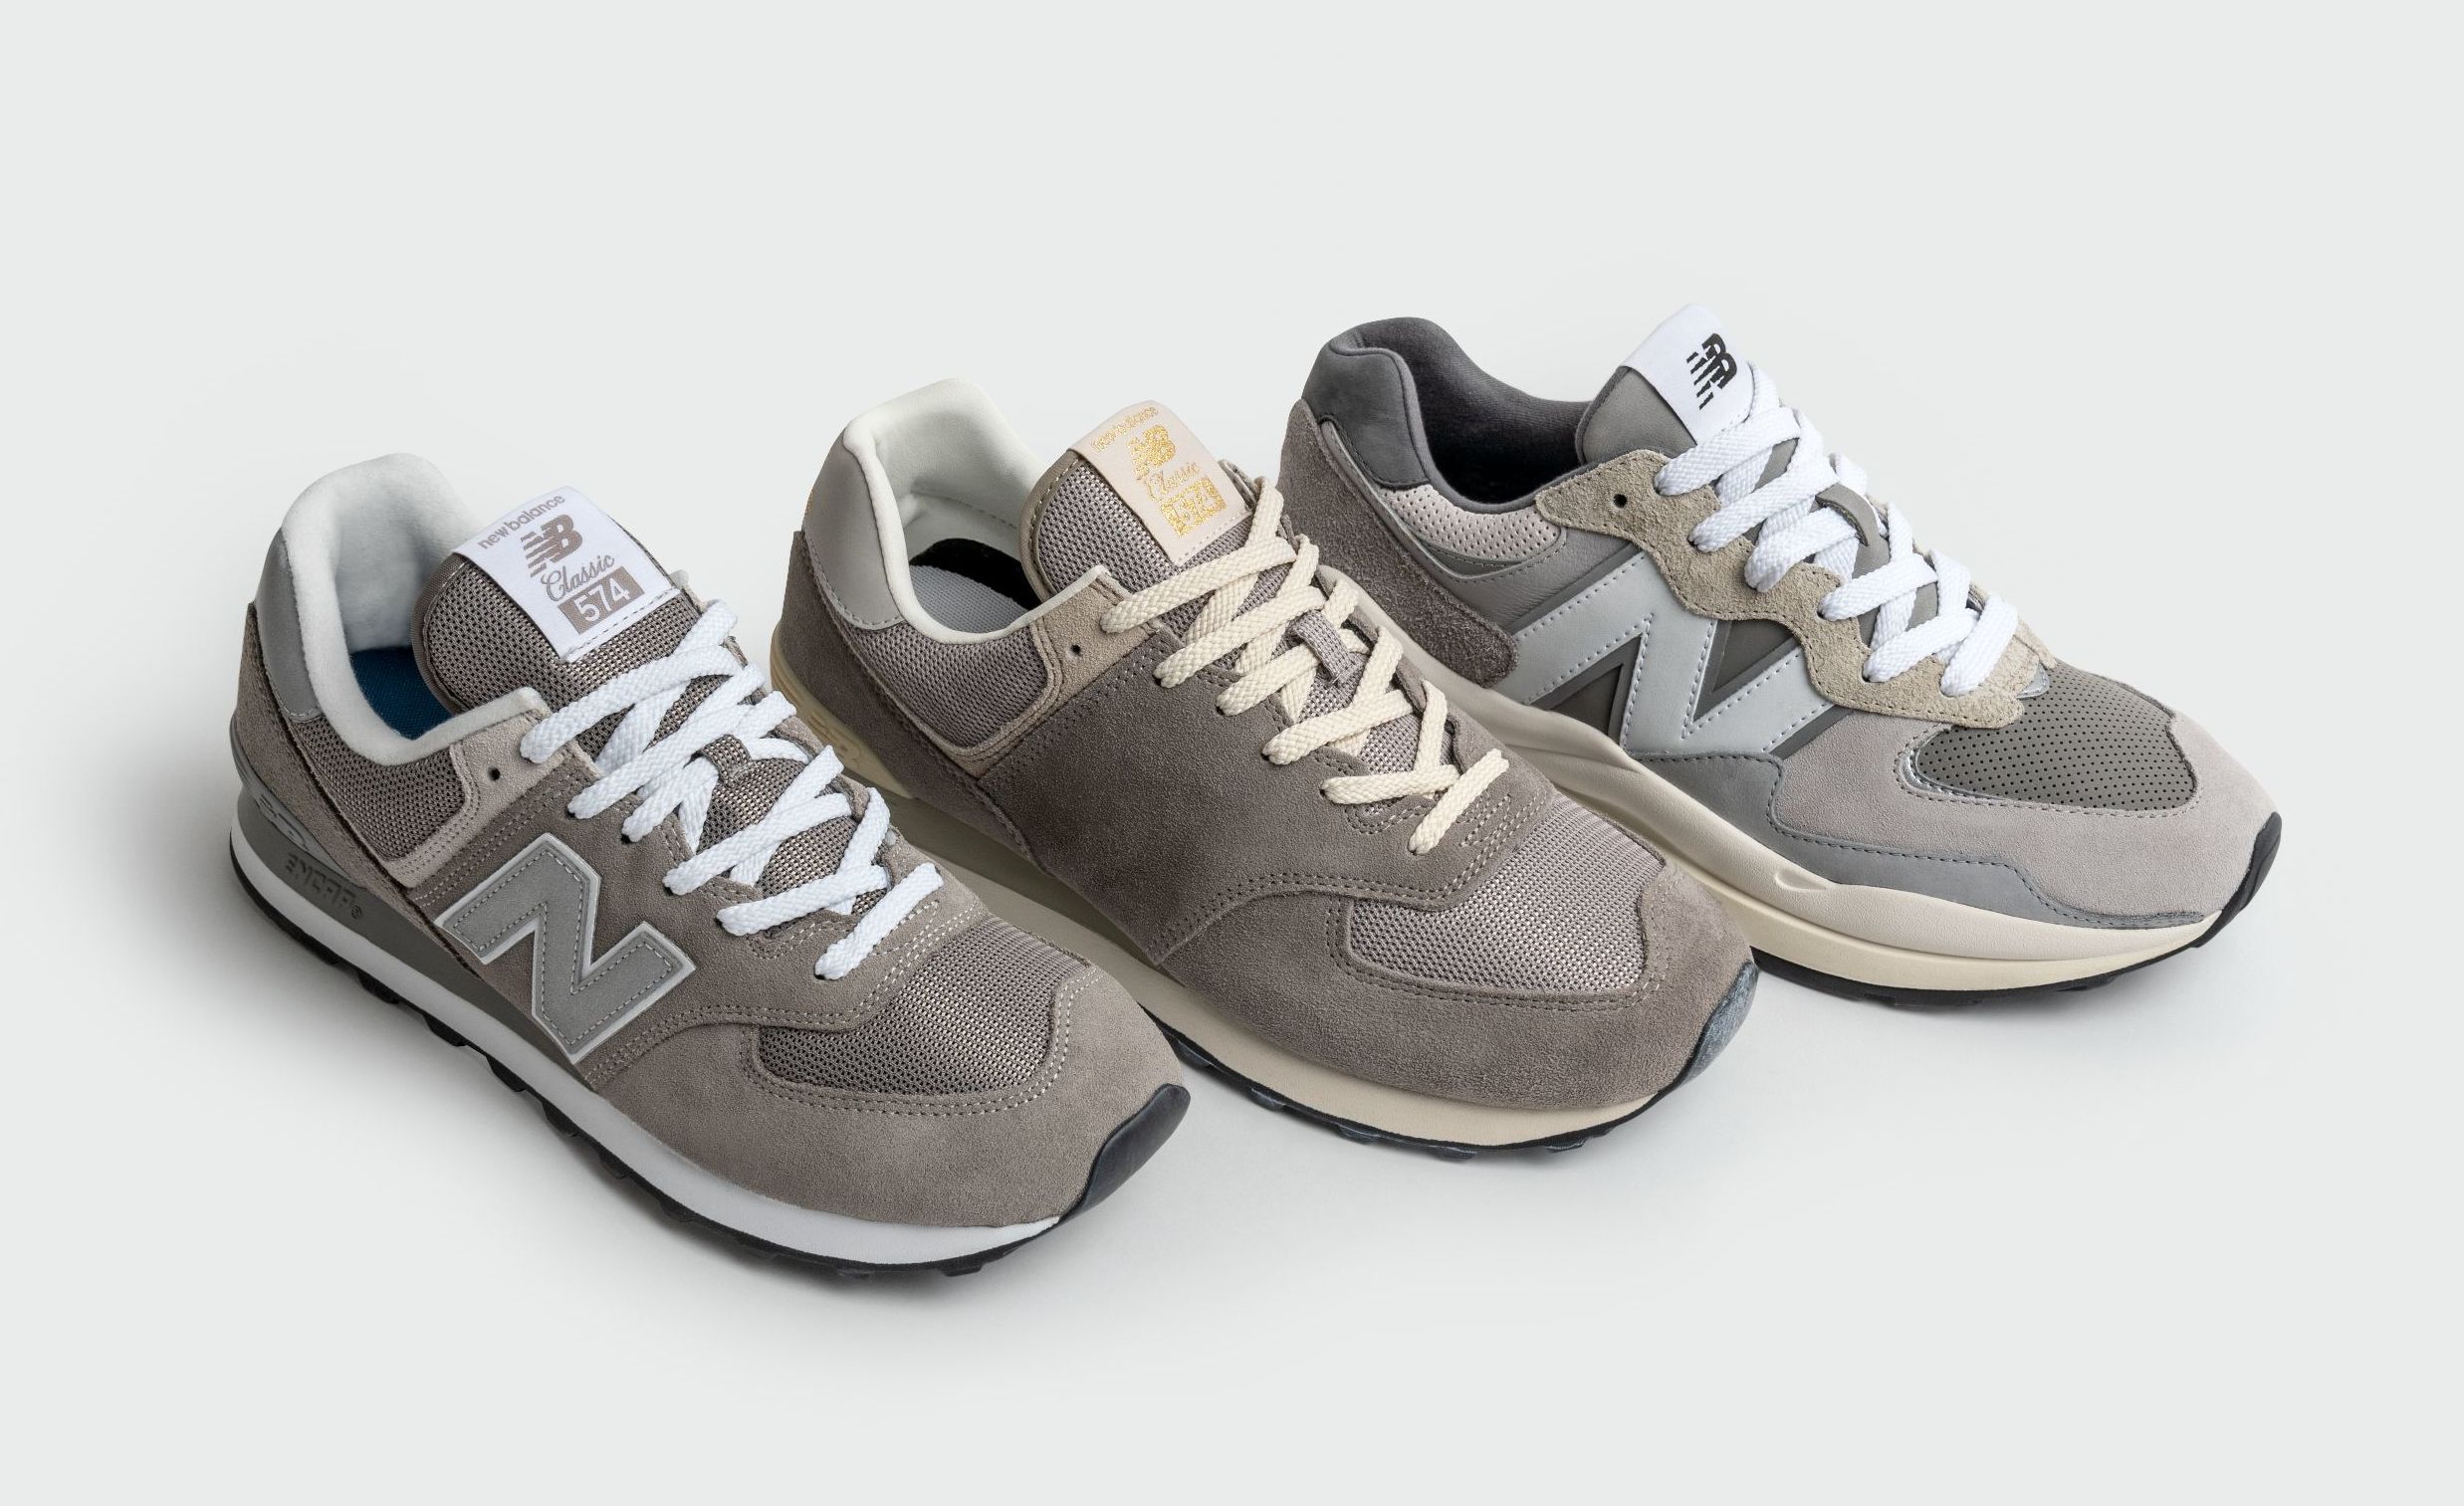 niezen Rationalisatie Vegetatie New Balance Is Celebrating 'Grey Day' With New Sneakers | Complex